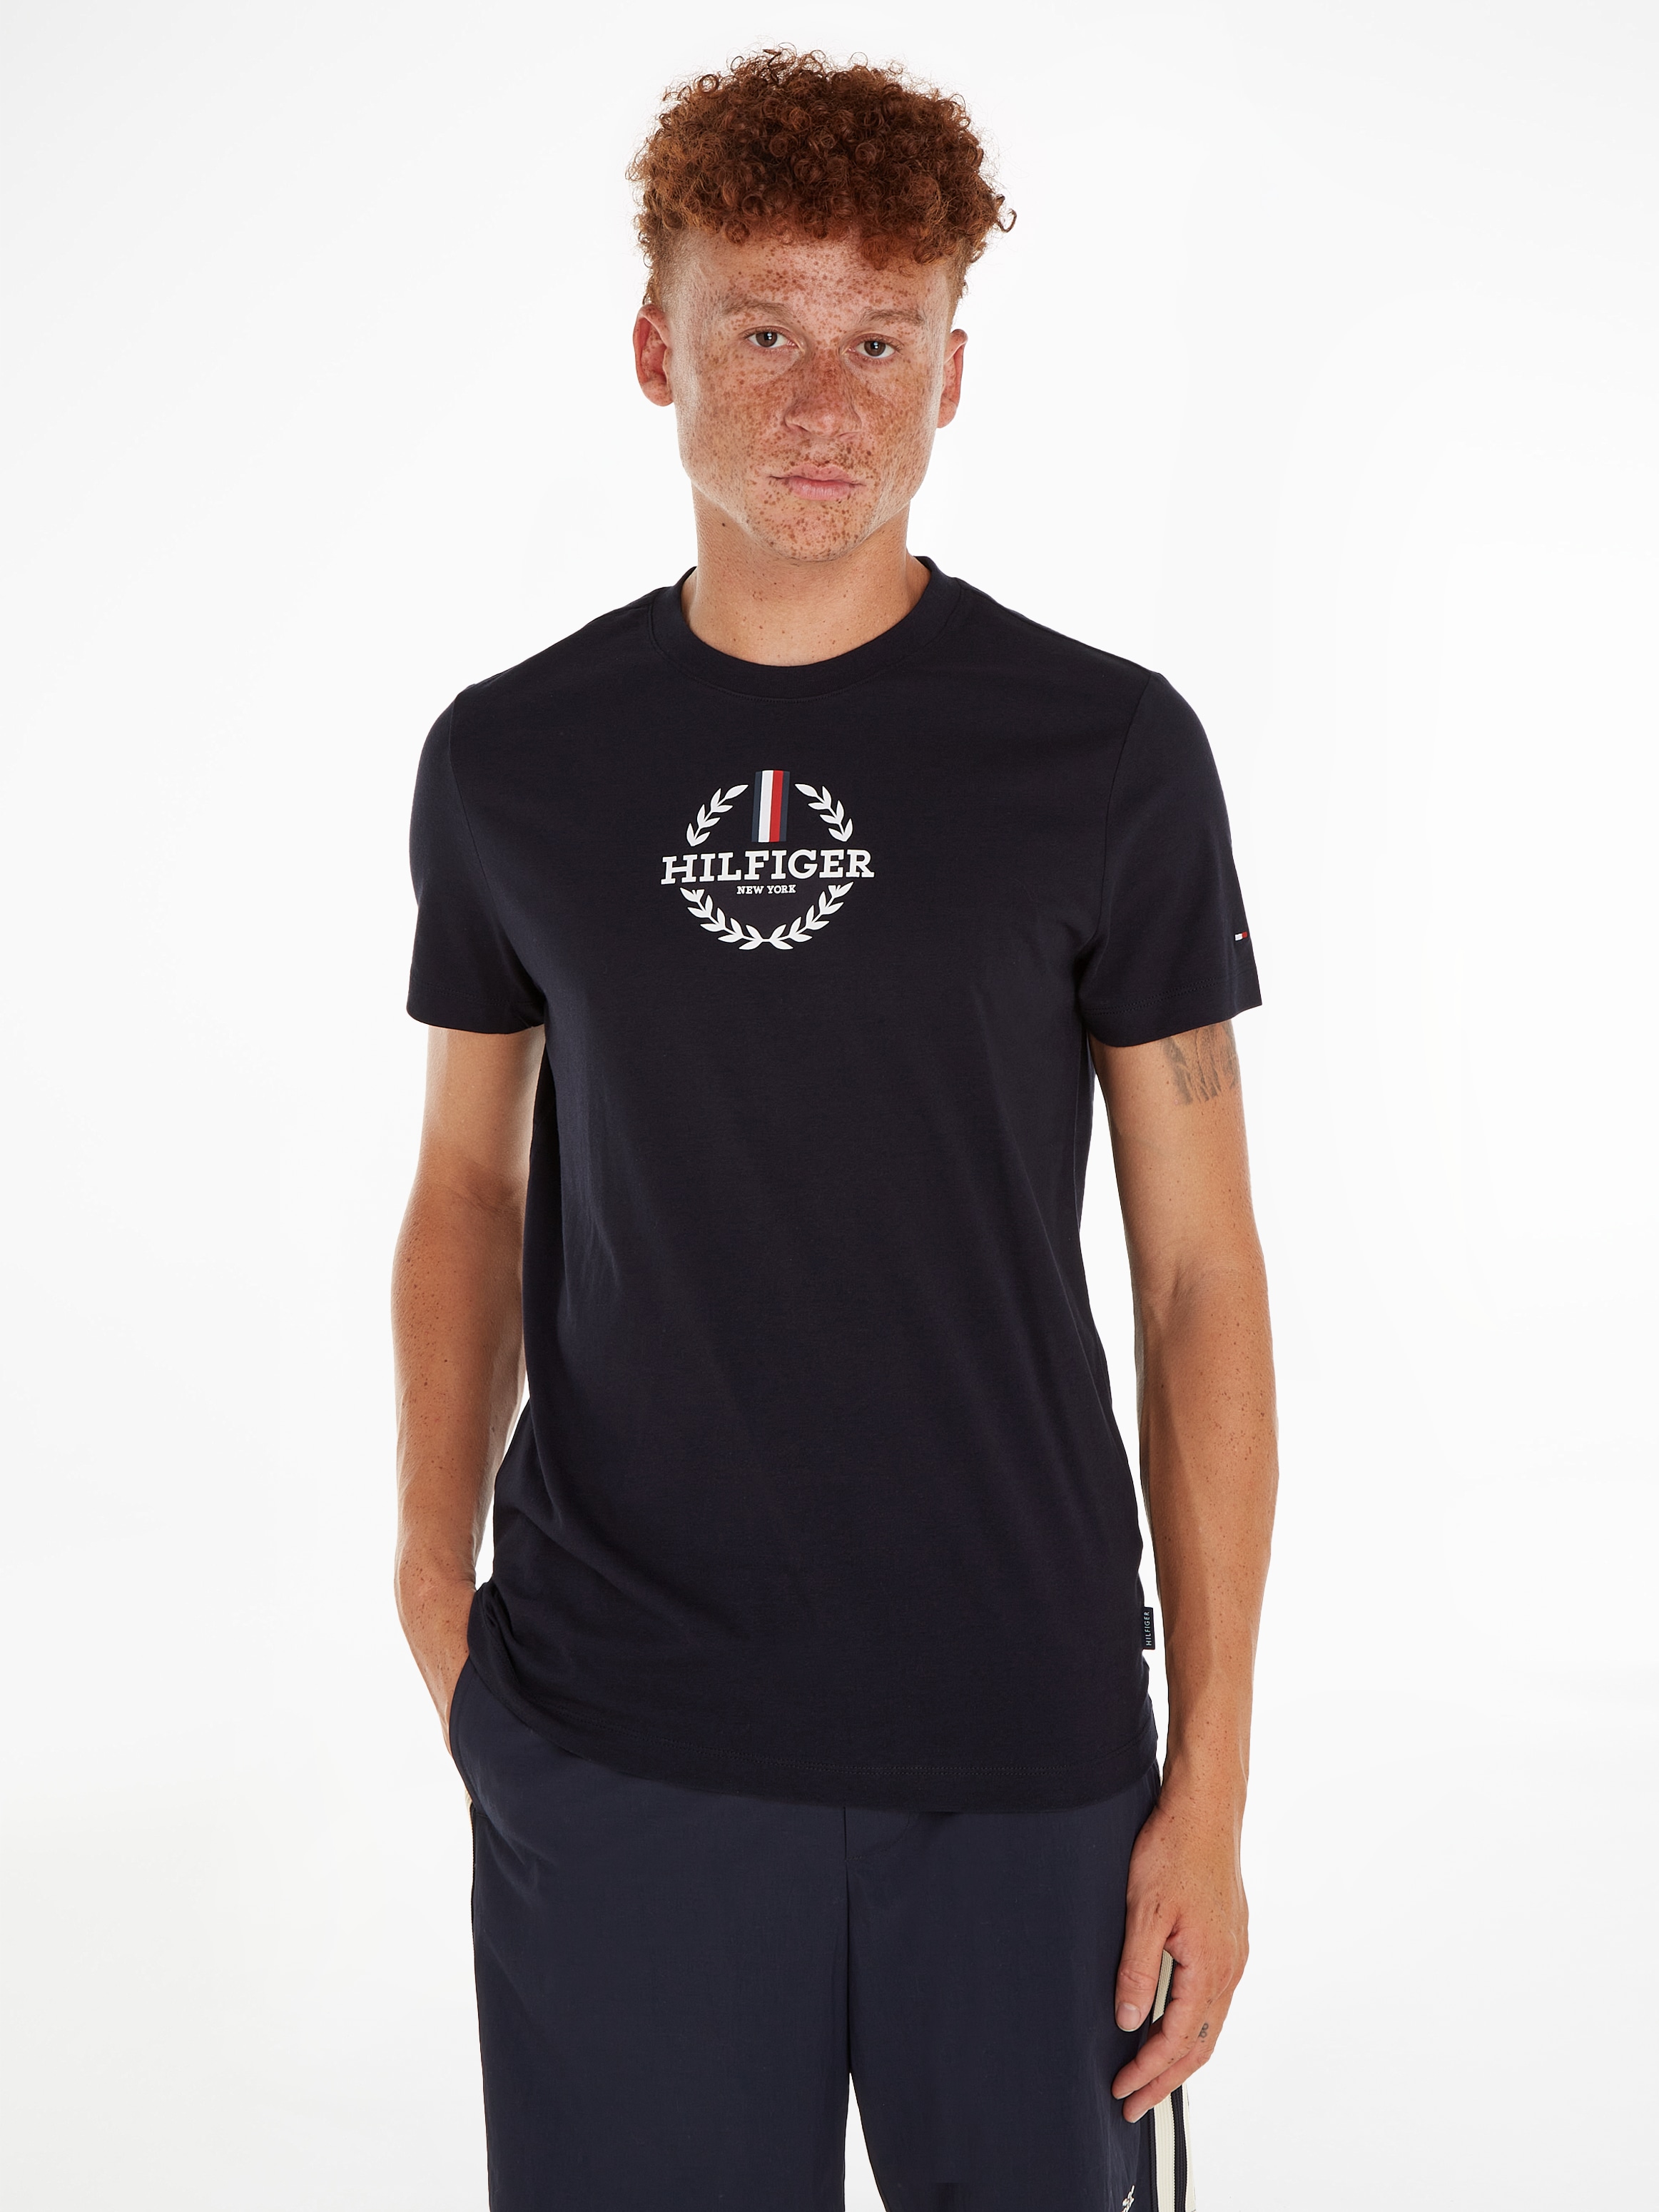 »GLOBAL WREATH STRIPE im TEE« Online Tommy Hilfiger Shop OTTO T-Shirt